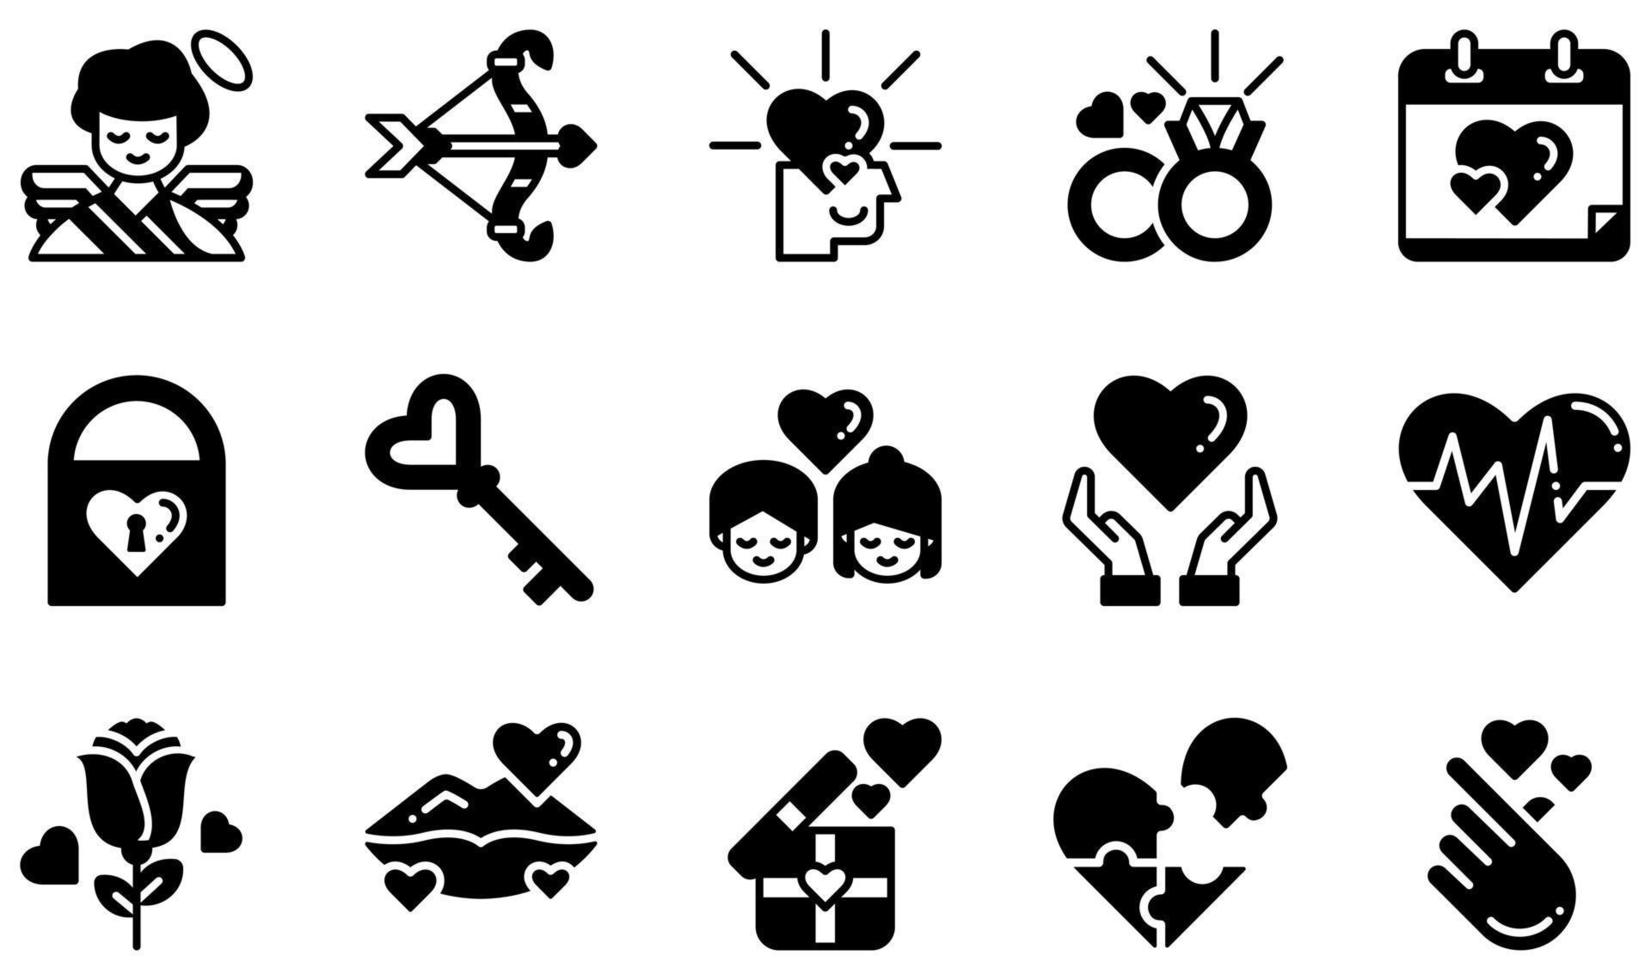 ensemble d'icônes vectorielles liées à l'amour. contient des icônes telles que cupidon, amoureux, alliance, cadenas, amour, rose et plus encore. vecteur